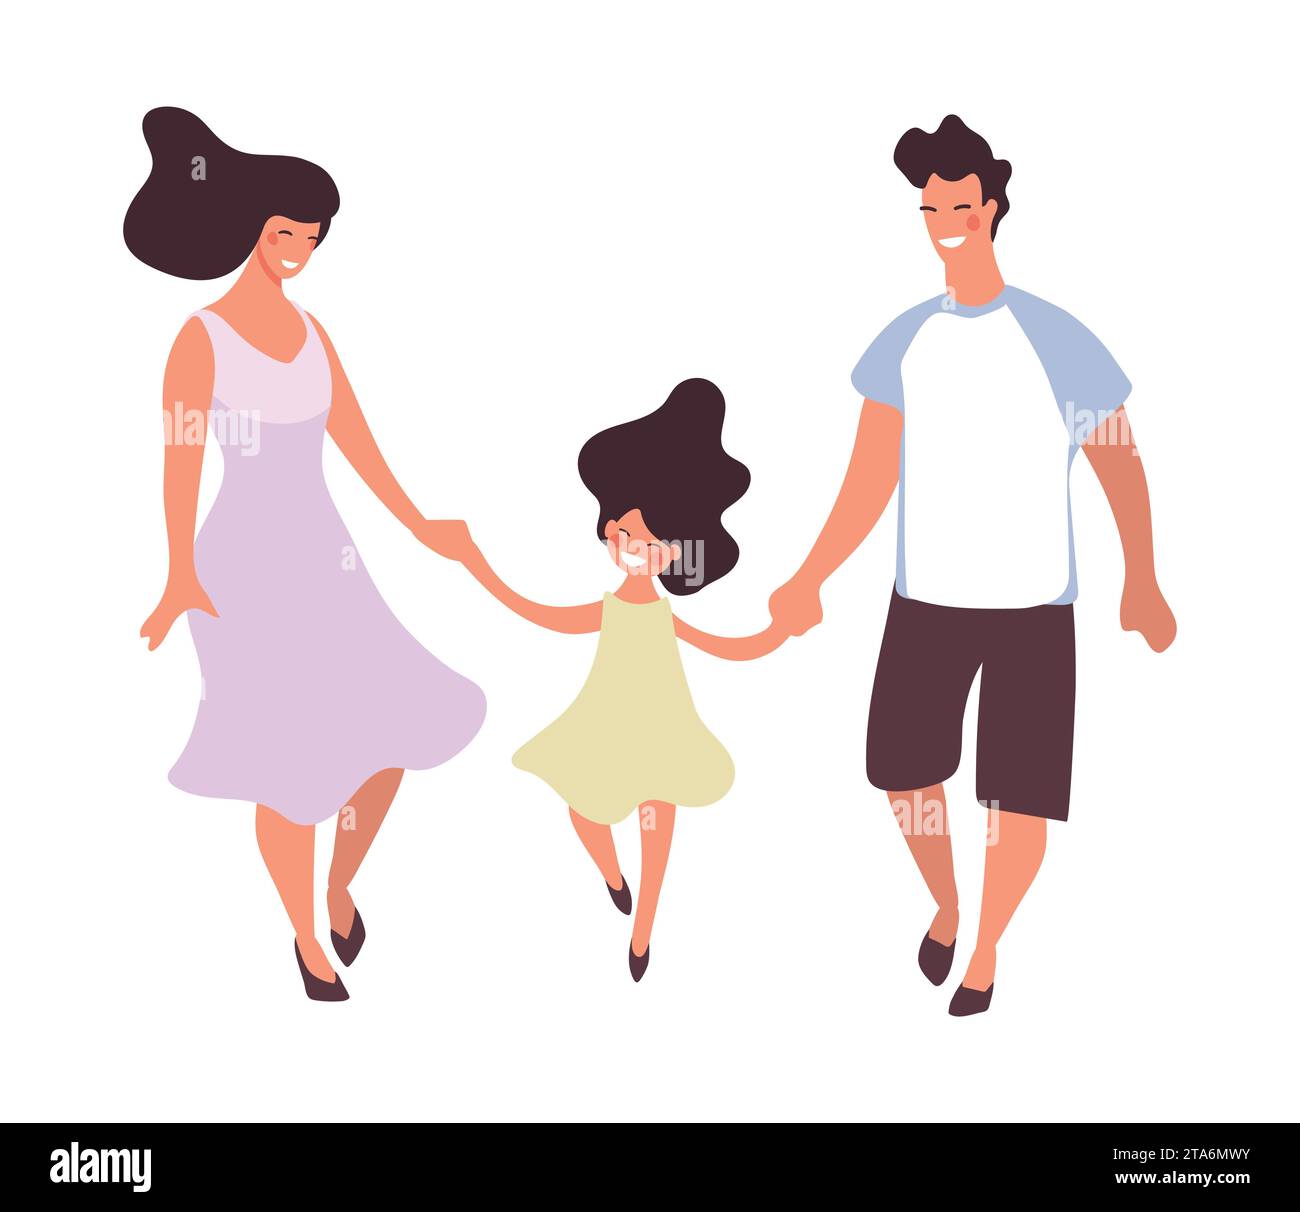 Jeune couple de parents se tenant la main et marchant avec leur fille, vecteur de dessin animé plat isolé sur fond blanc. Concept de parentalité Illustration de Vecteur